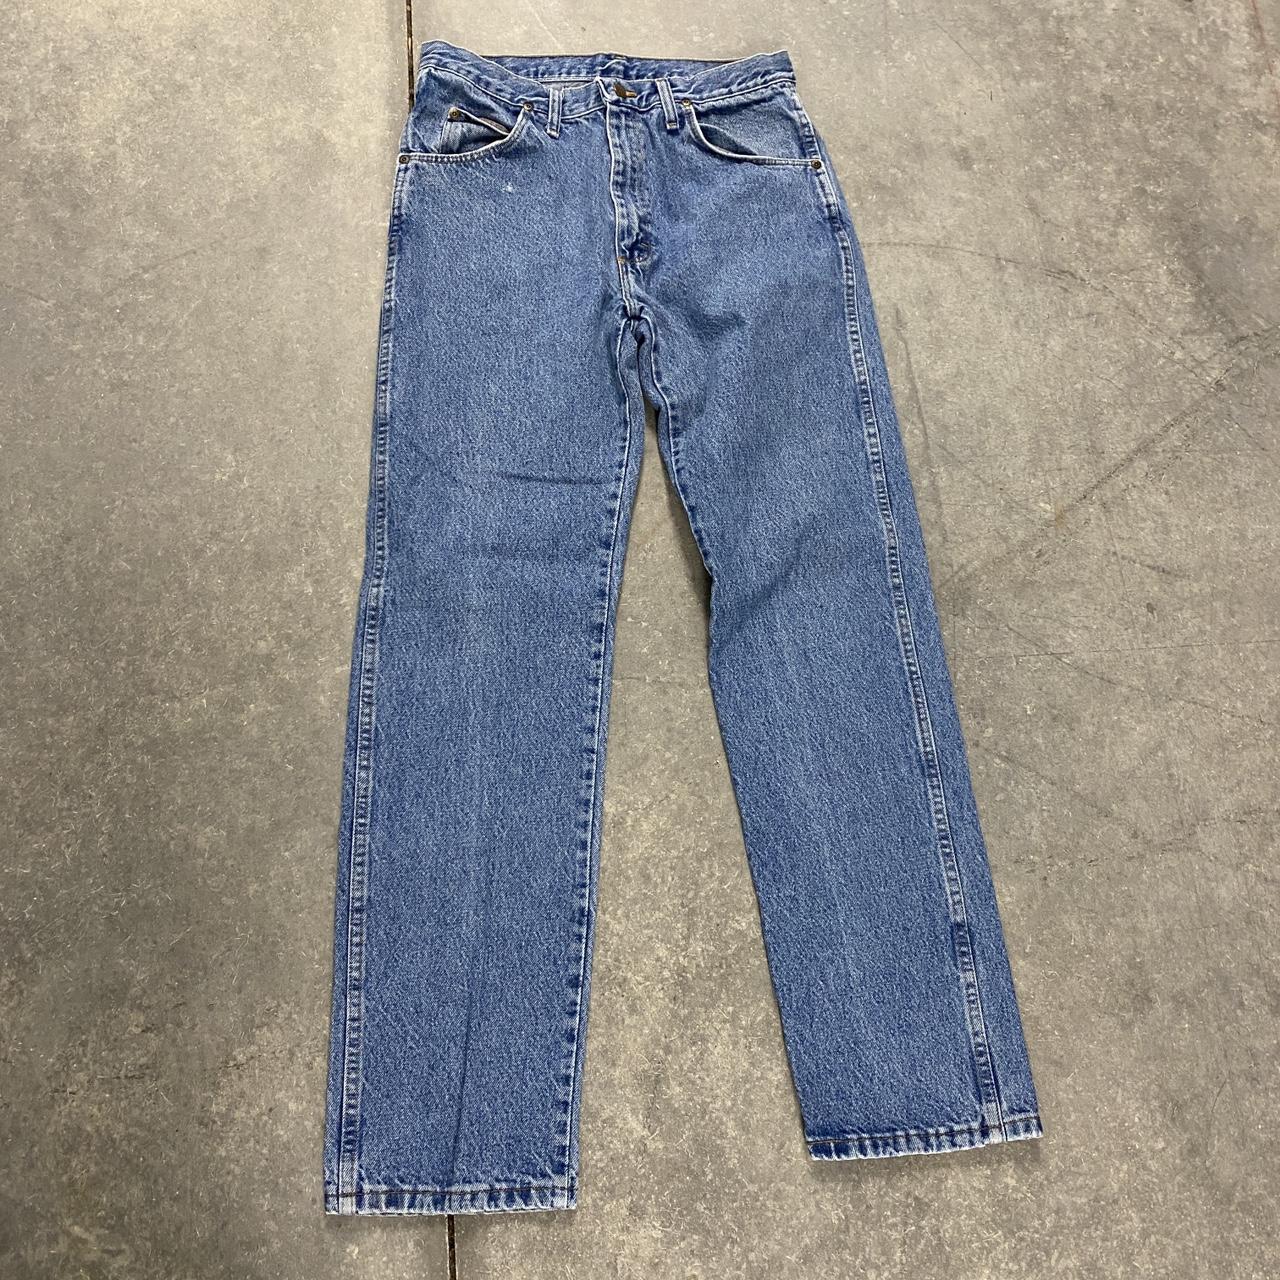 Vintage 90s wrangler straight leg denim jeans 32 x... - Depop